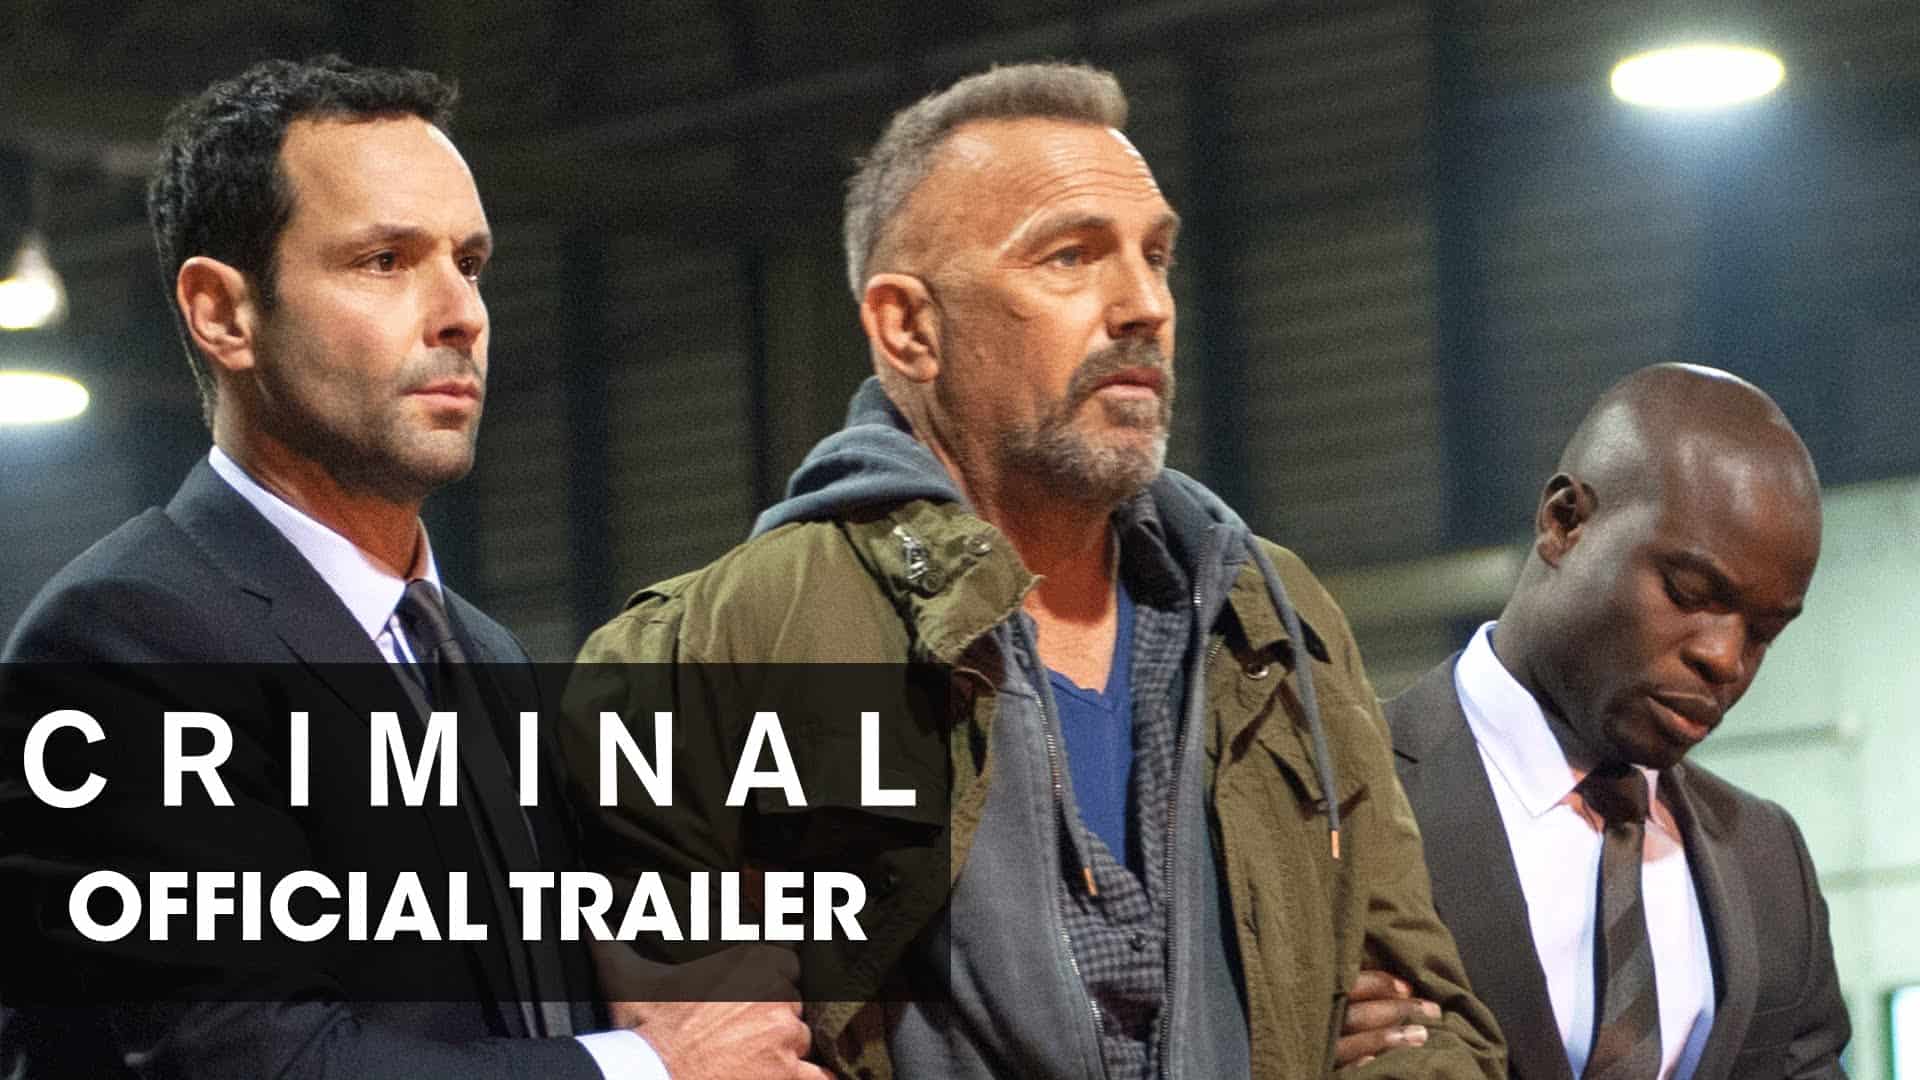 Kriminální trailer